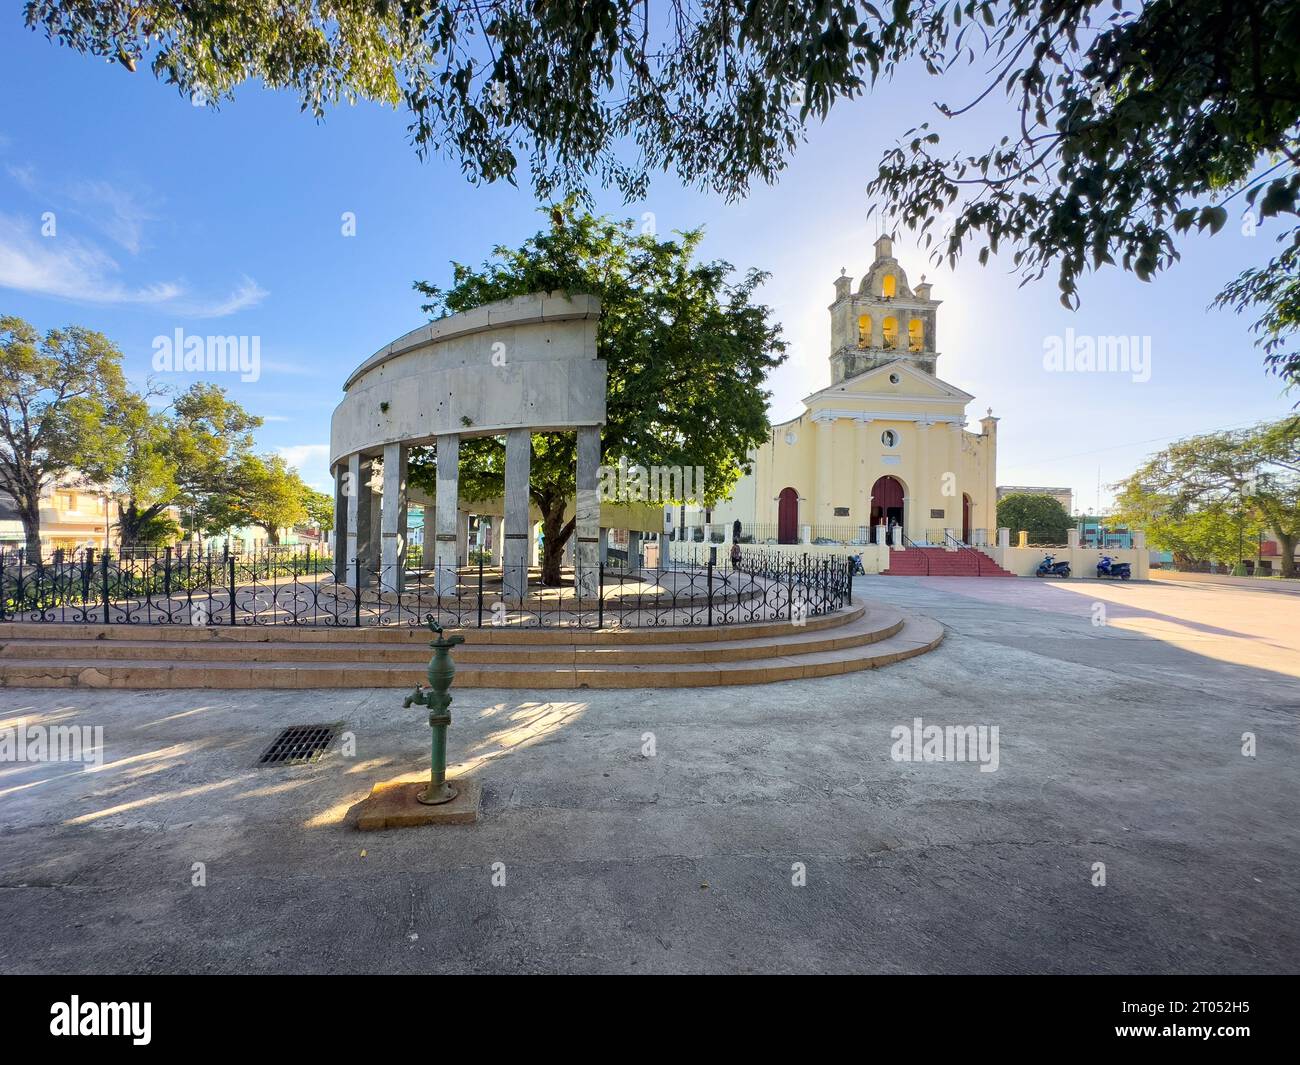 Parco o piazza El Carmen. Il monumento in marmo del colonnato segna il luogo di fondazione della città. La chiesa cattolica coloniale di El Carmen sullo sfondo Foto Stock